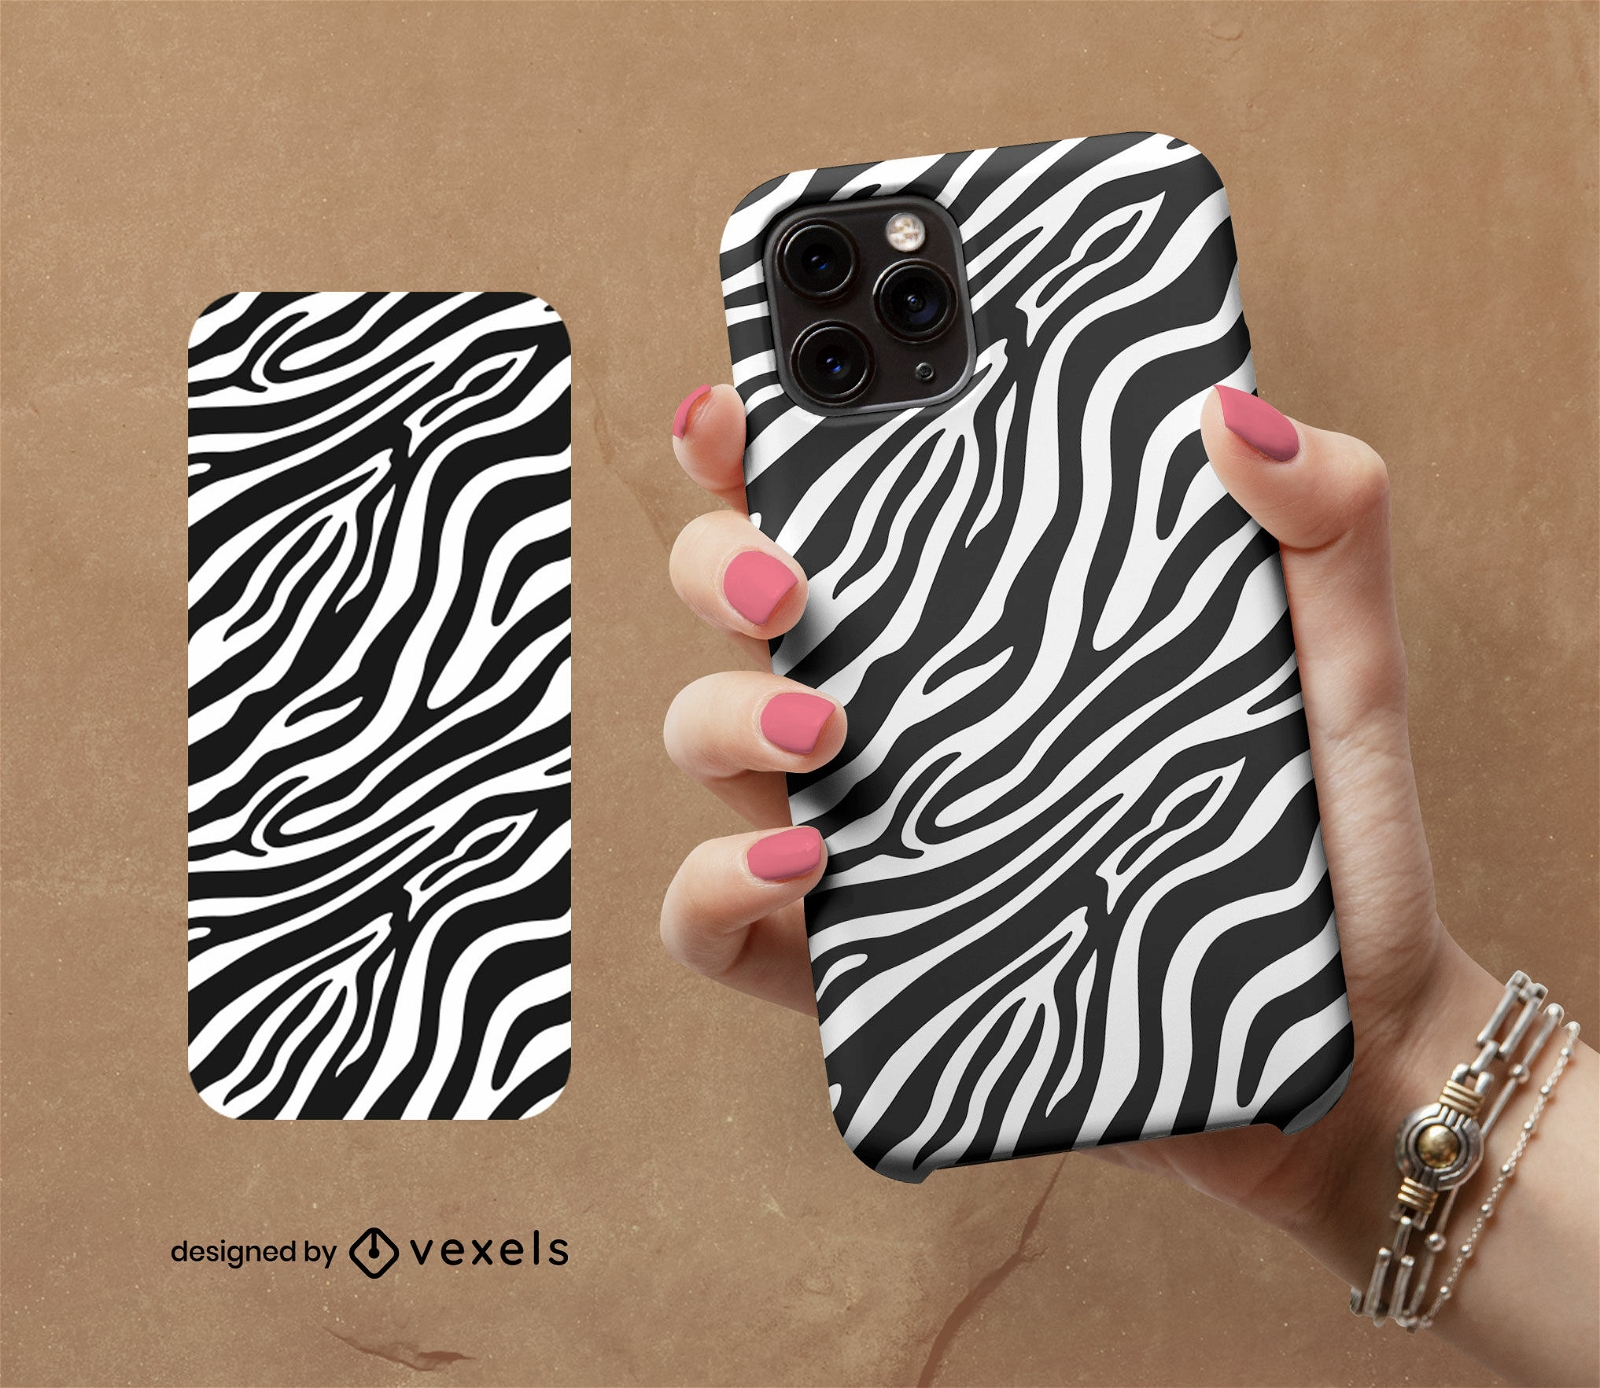 Zebra stripe pattern phone case design